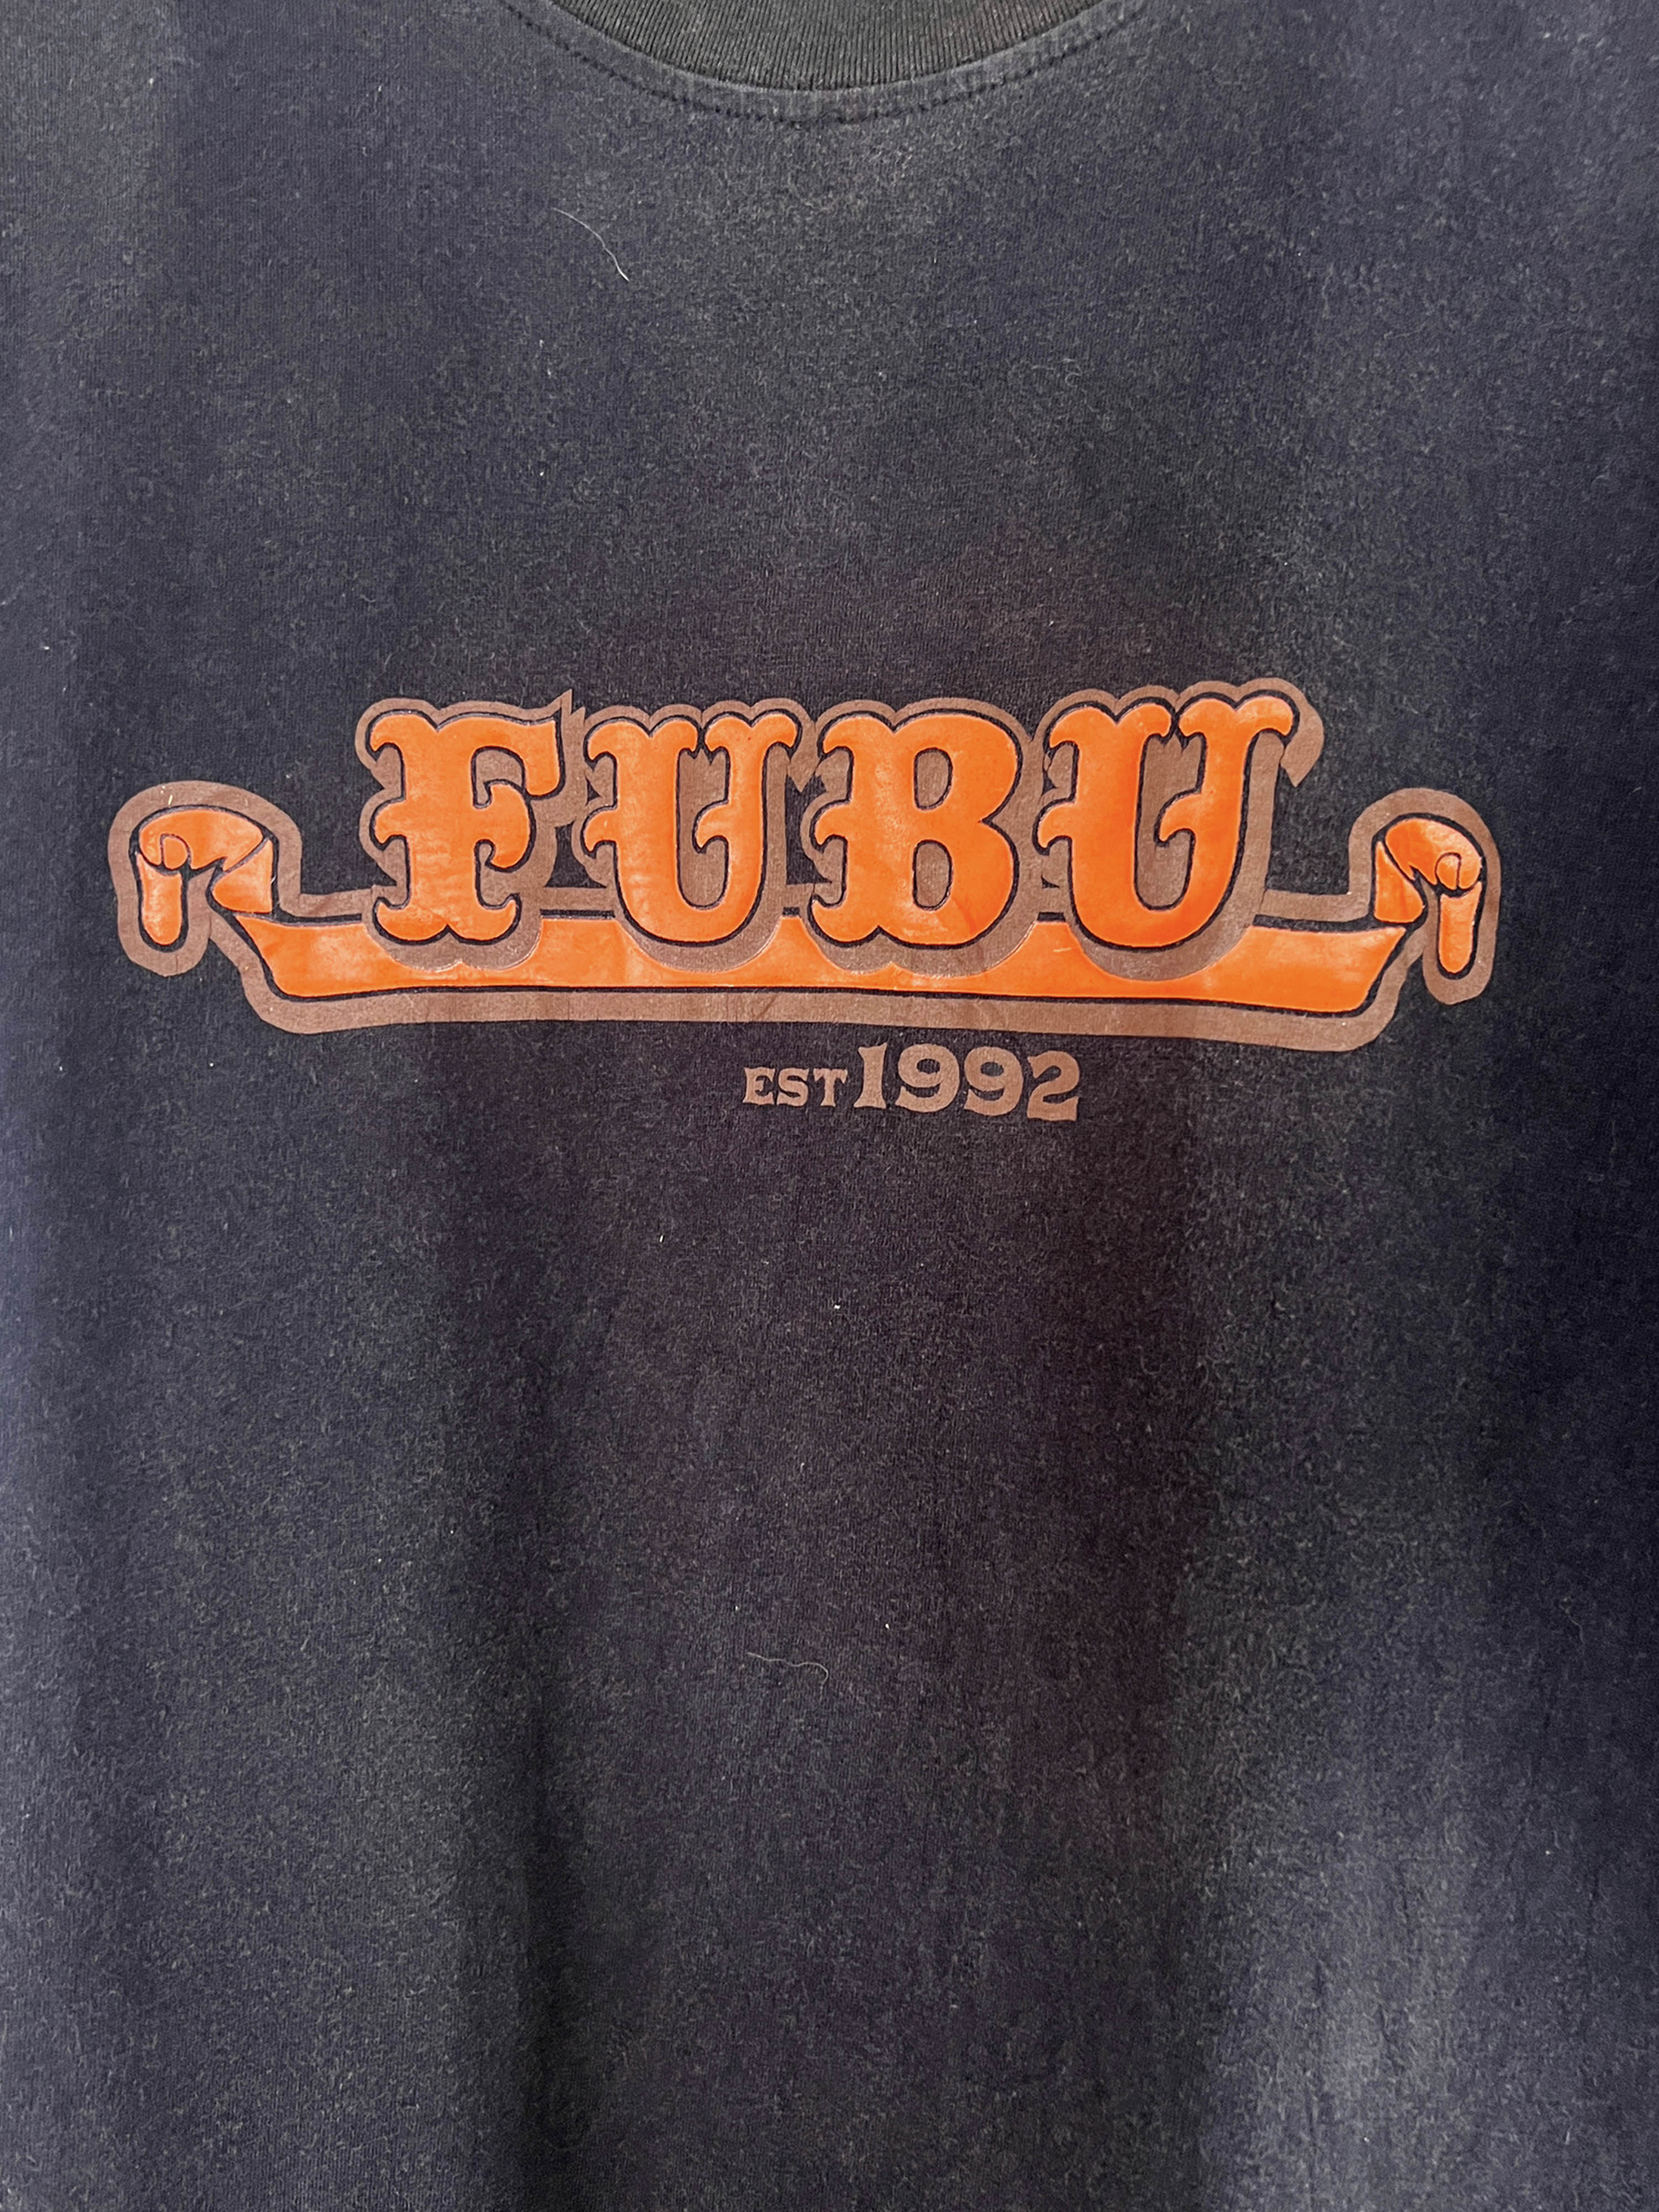 FUBU printing t-shirts